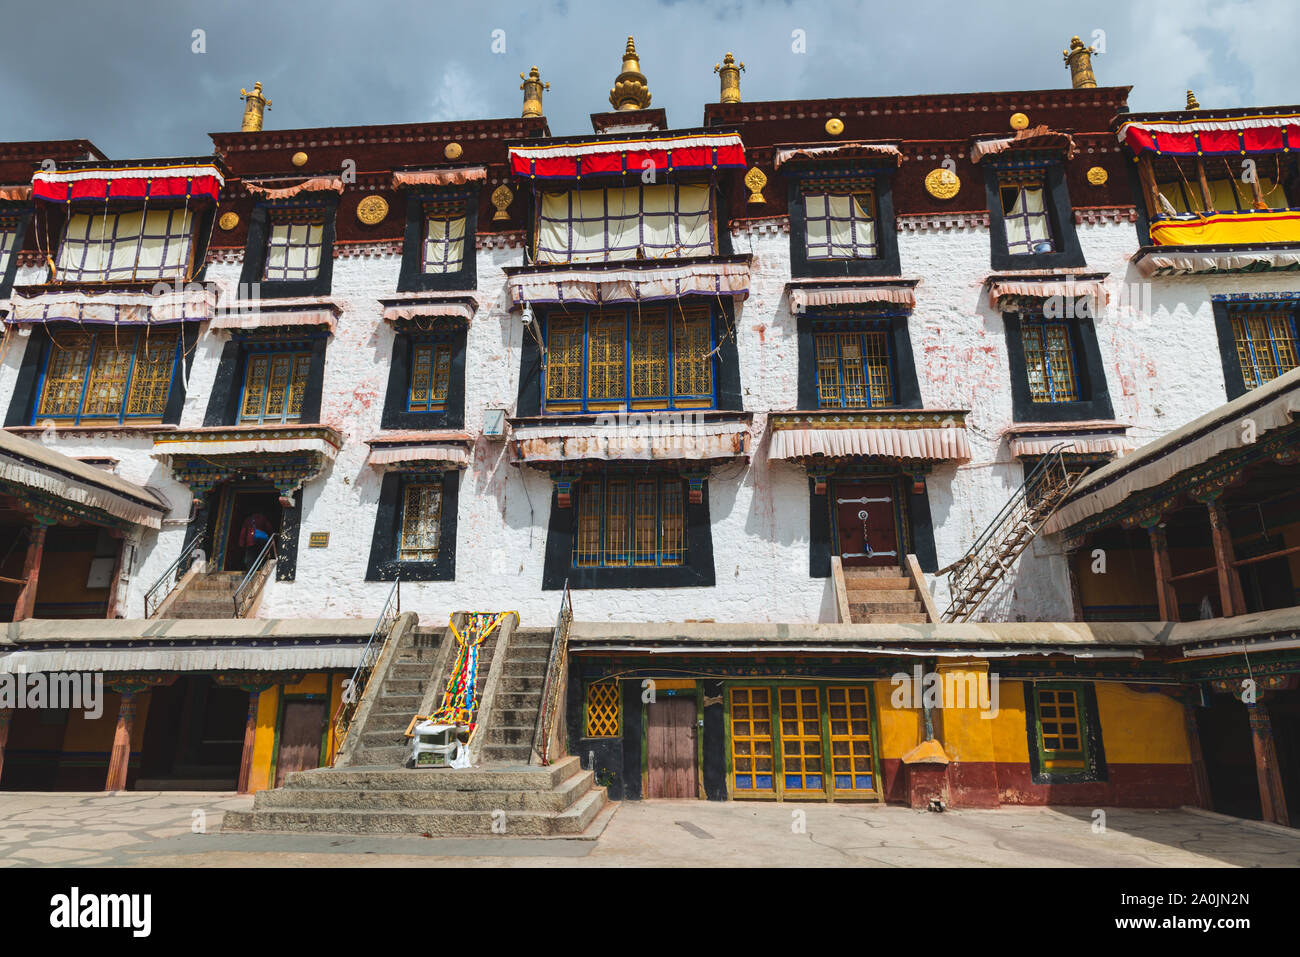 Détail architectural de Drepung. Le monastère est le plus grand de tous les monastères tibétains et est situé dans les contreforts de Lhassa, au Tibet. Banque D'Images